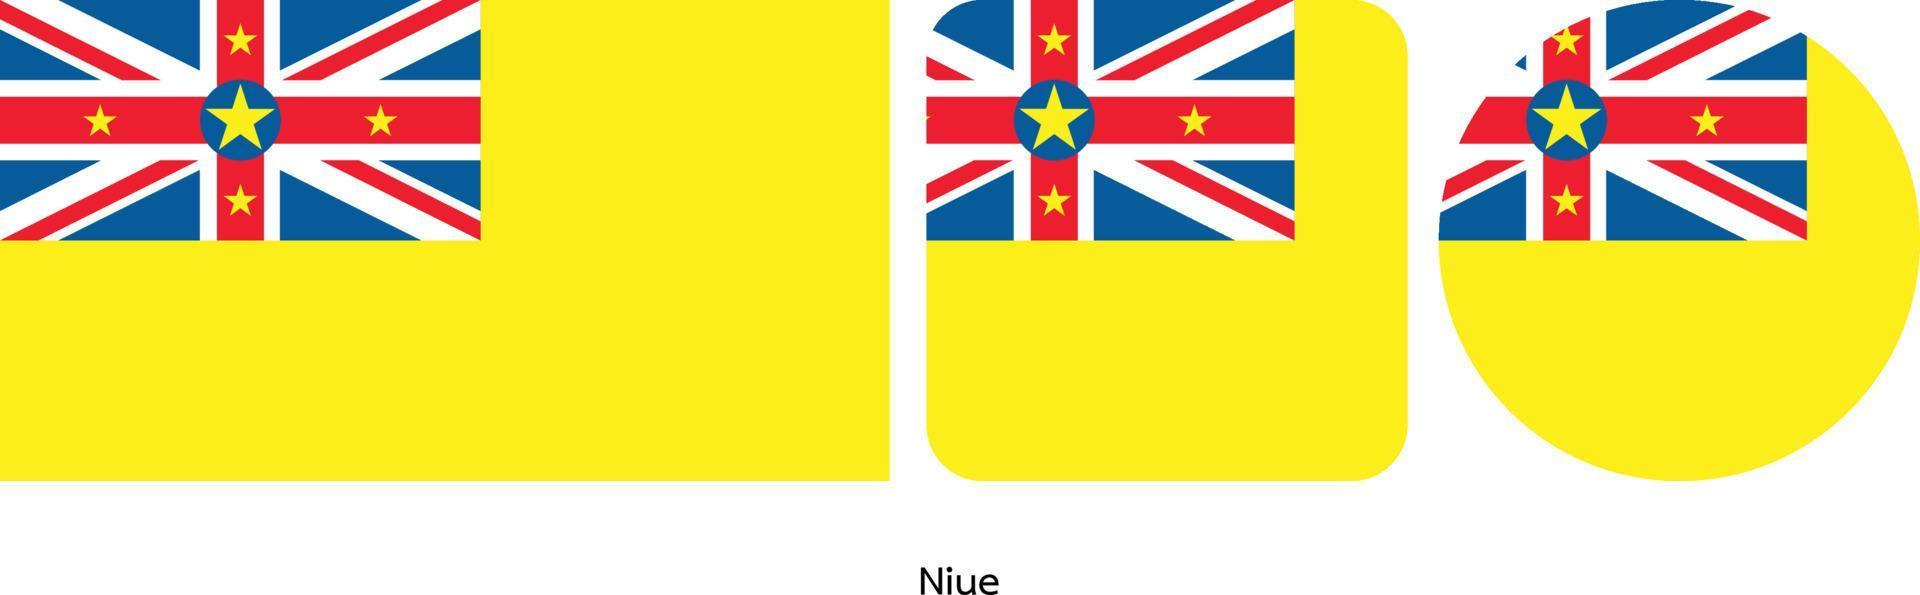 bandera de niue, ilustración vectorial vector